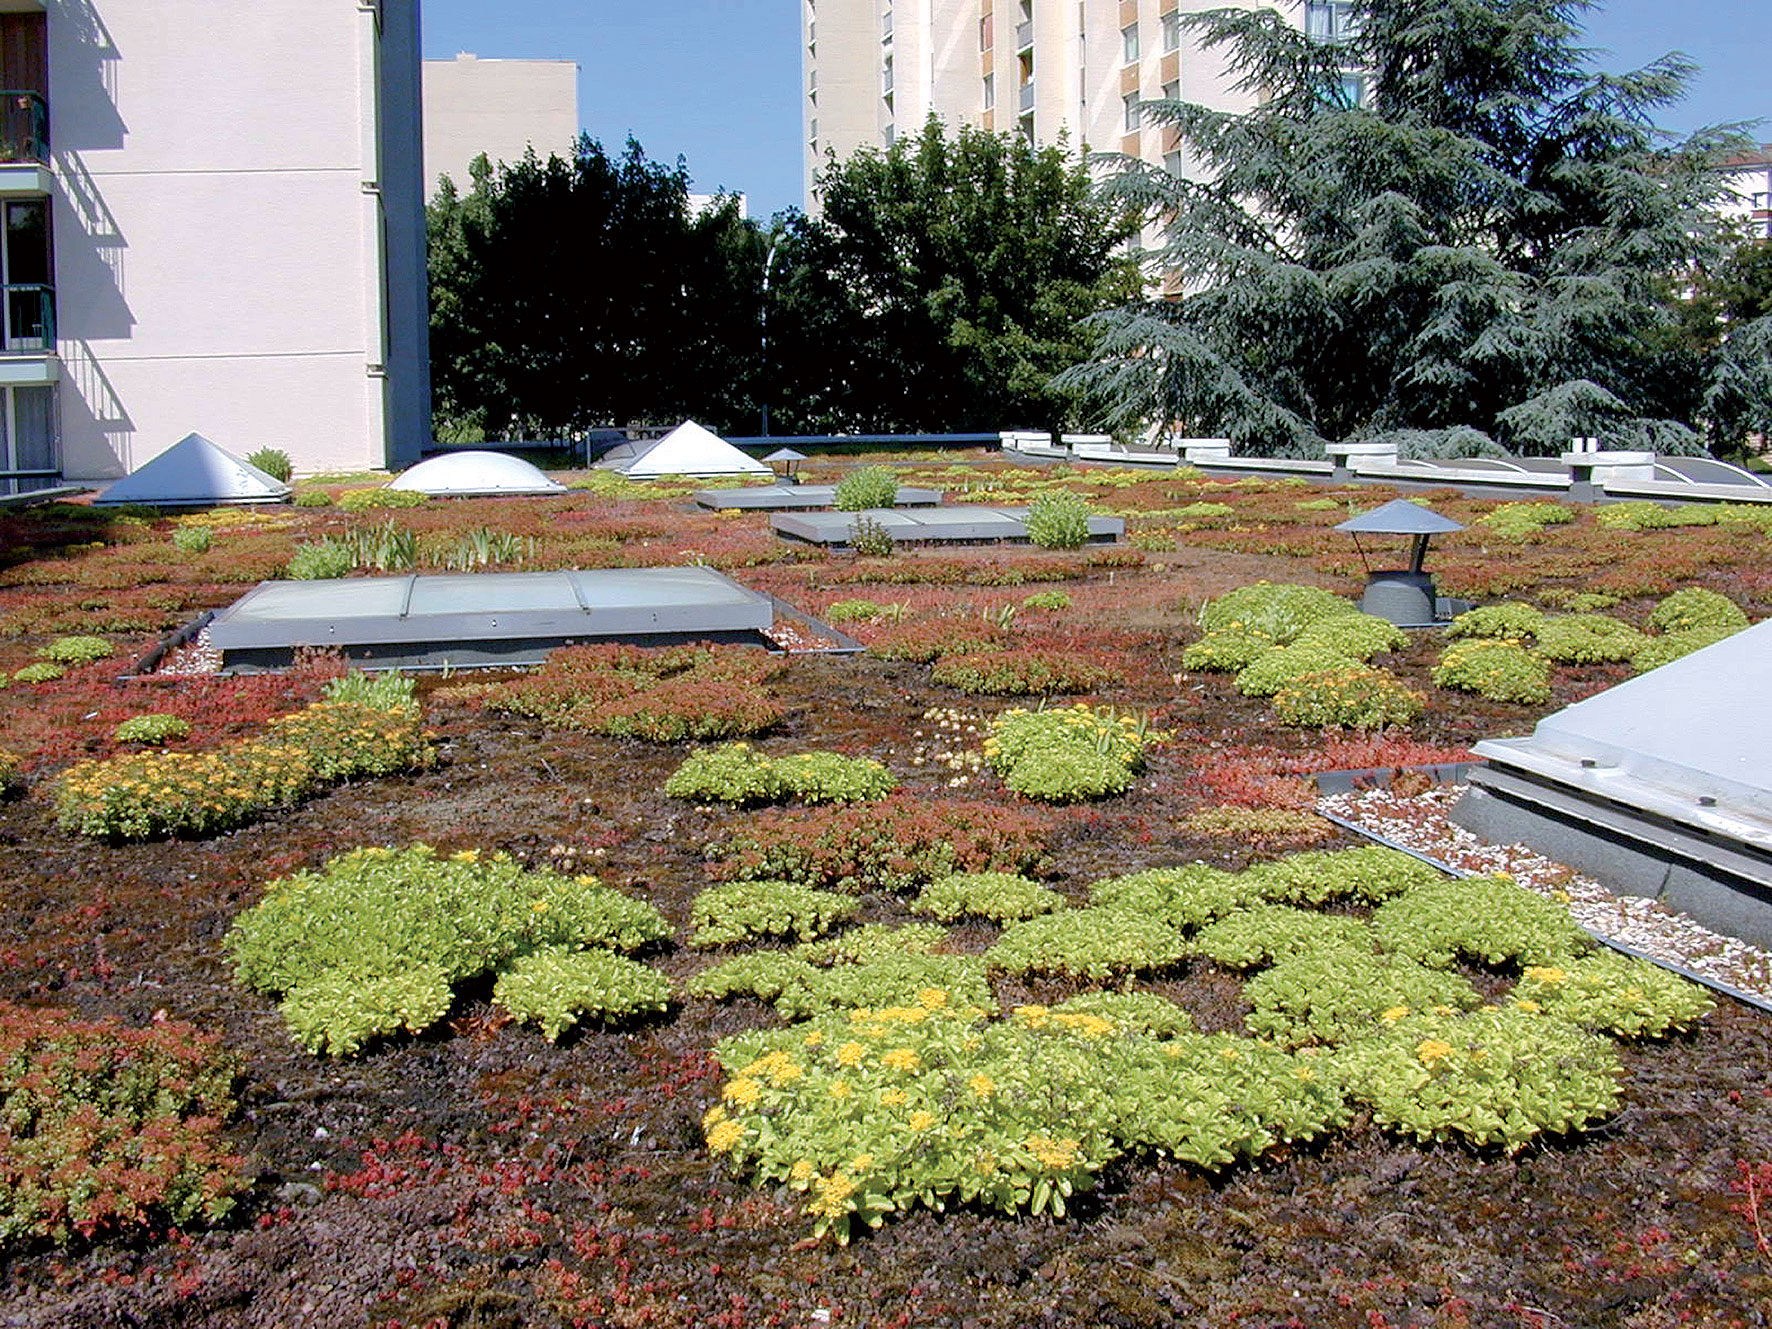 Najmodernejšie a ekologické riešenie zastrešenia bytových domov predstavuje extenzívna vegetačná strecha.